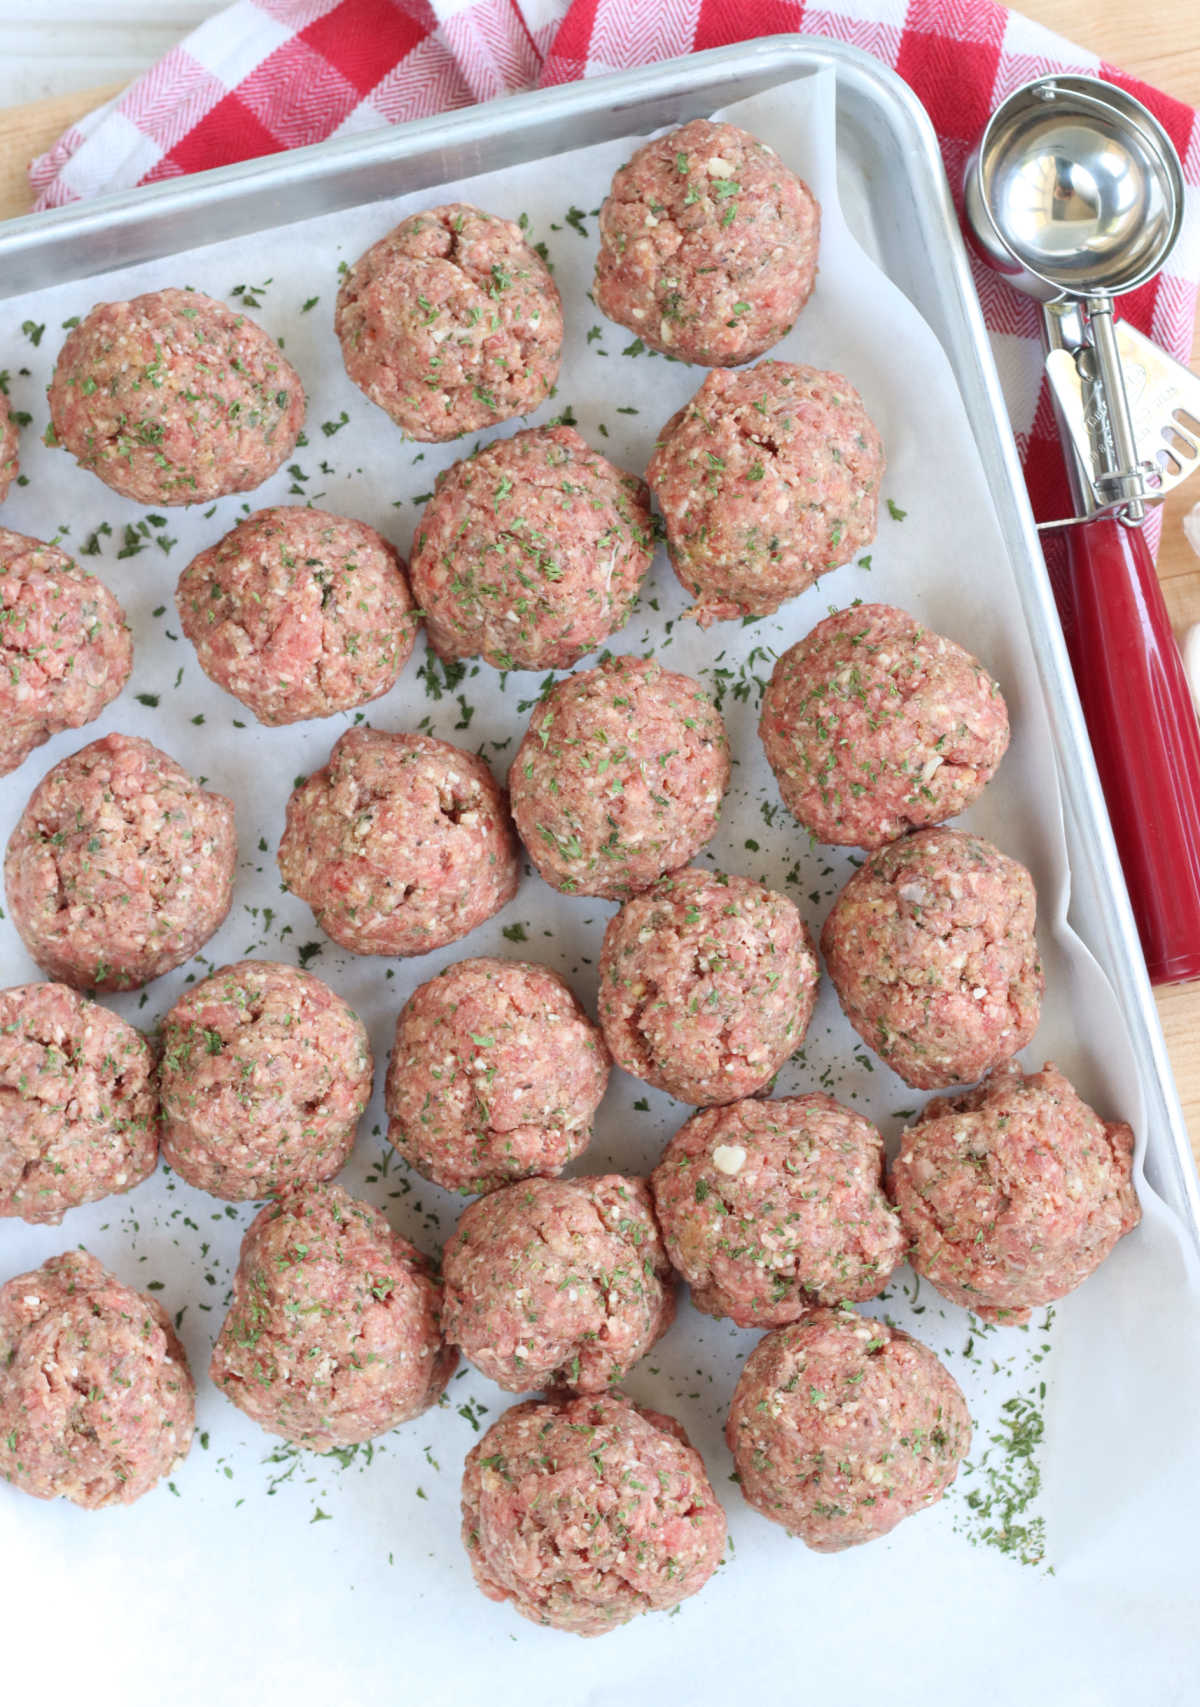 Uncooked meatballs on sheet pan.